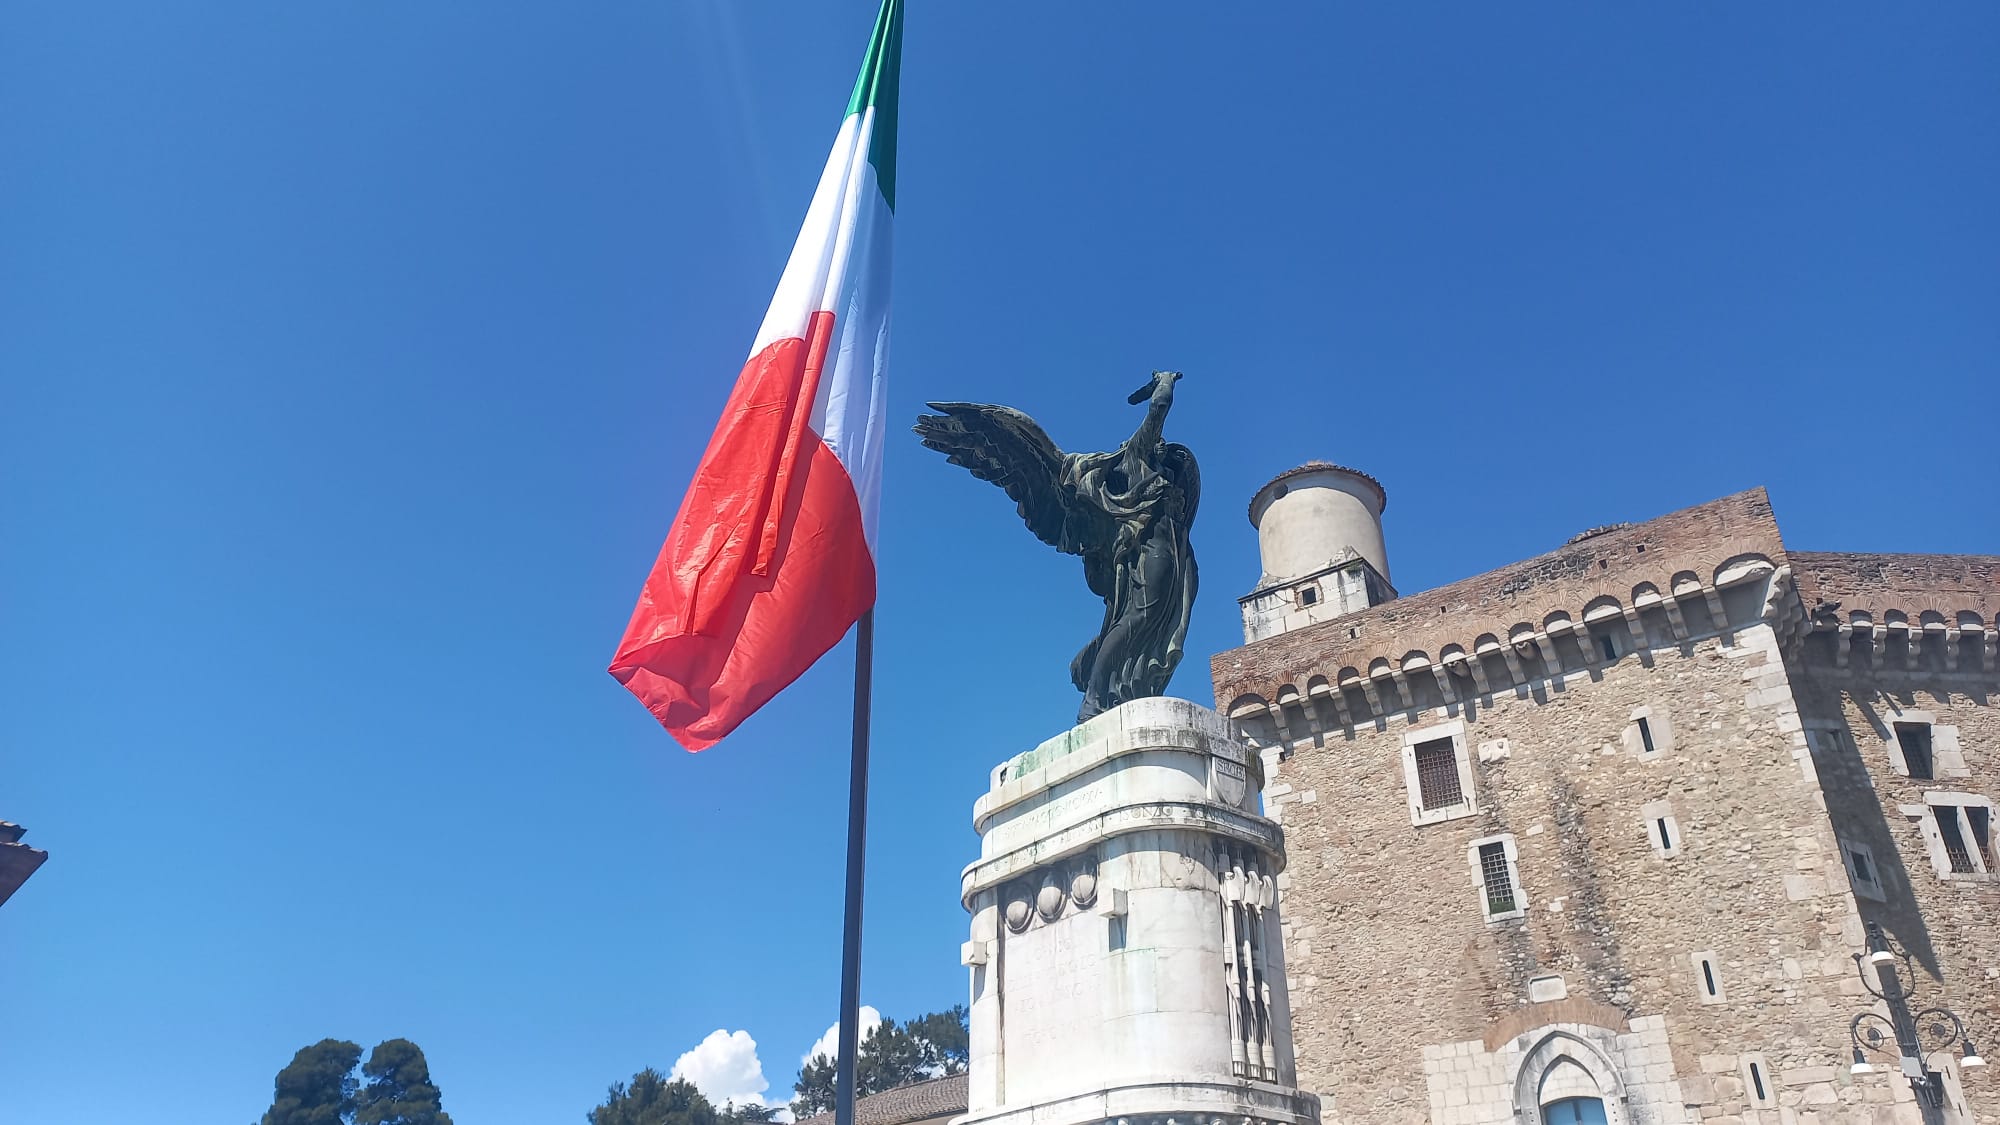 Viva l’Italia, repubblica democratica fondata sul lavoro…